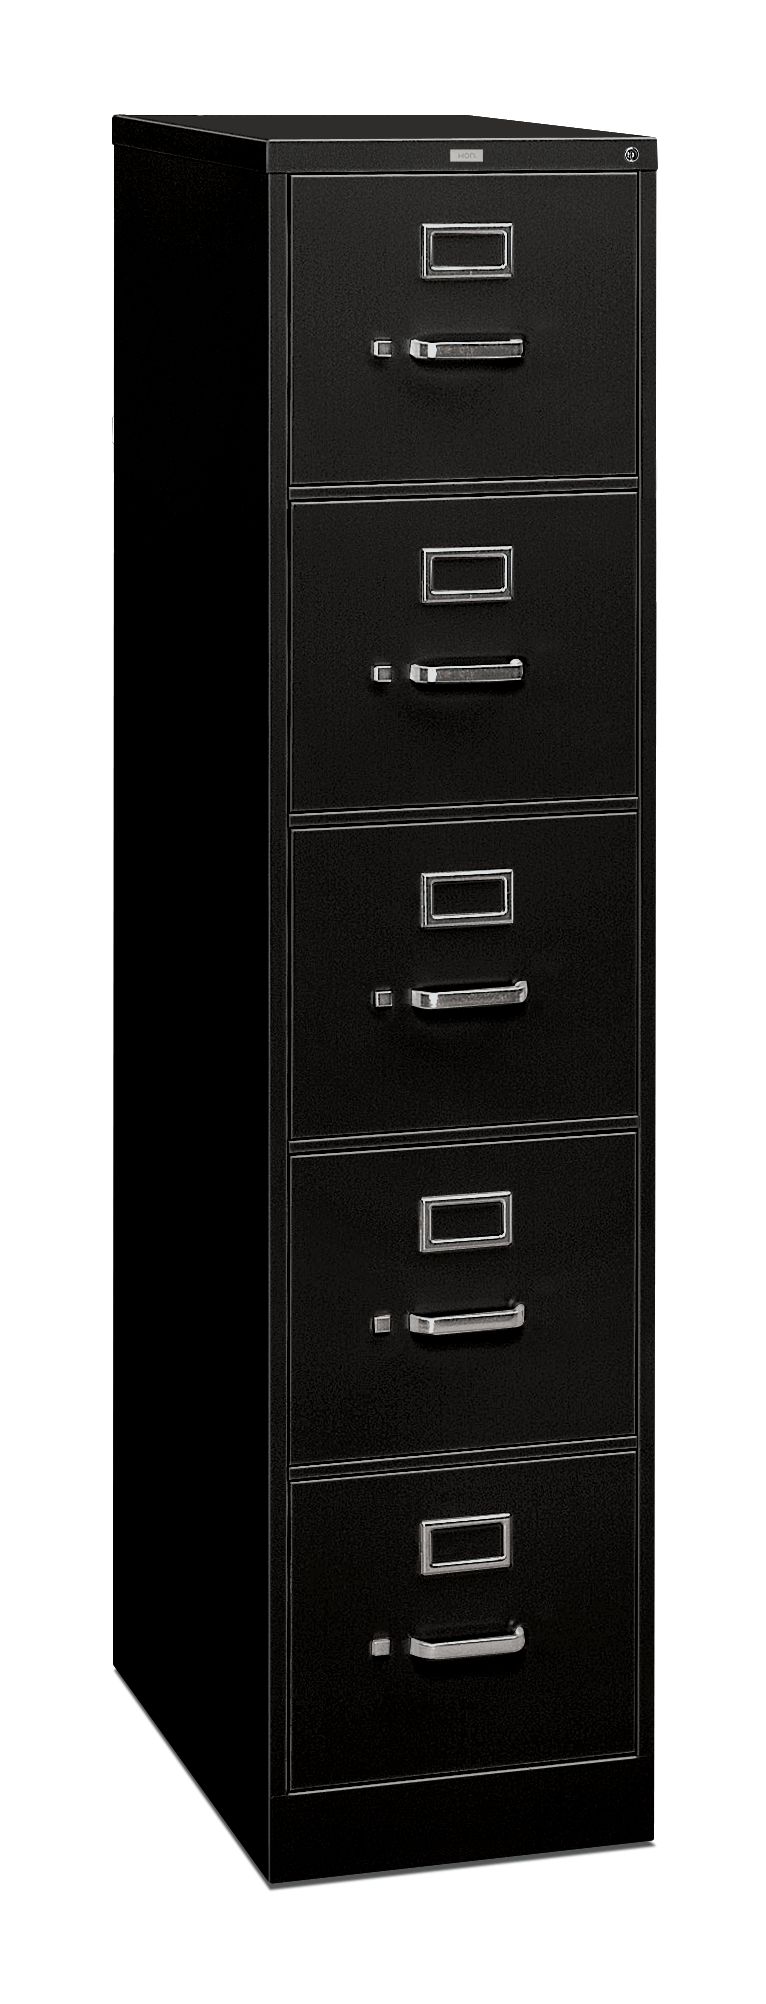 HON 5-Drawer Filing Cabinet - 310 Series Full-Suspension Letter File Cabinet, 26-1/2d, Black (H315) - image 1 of 5